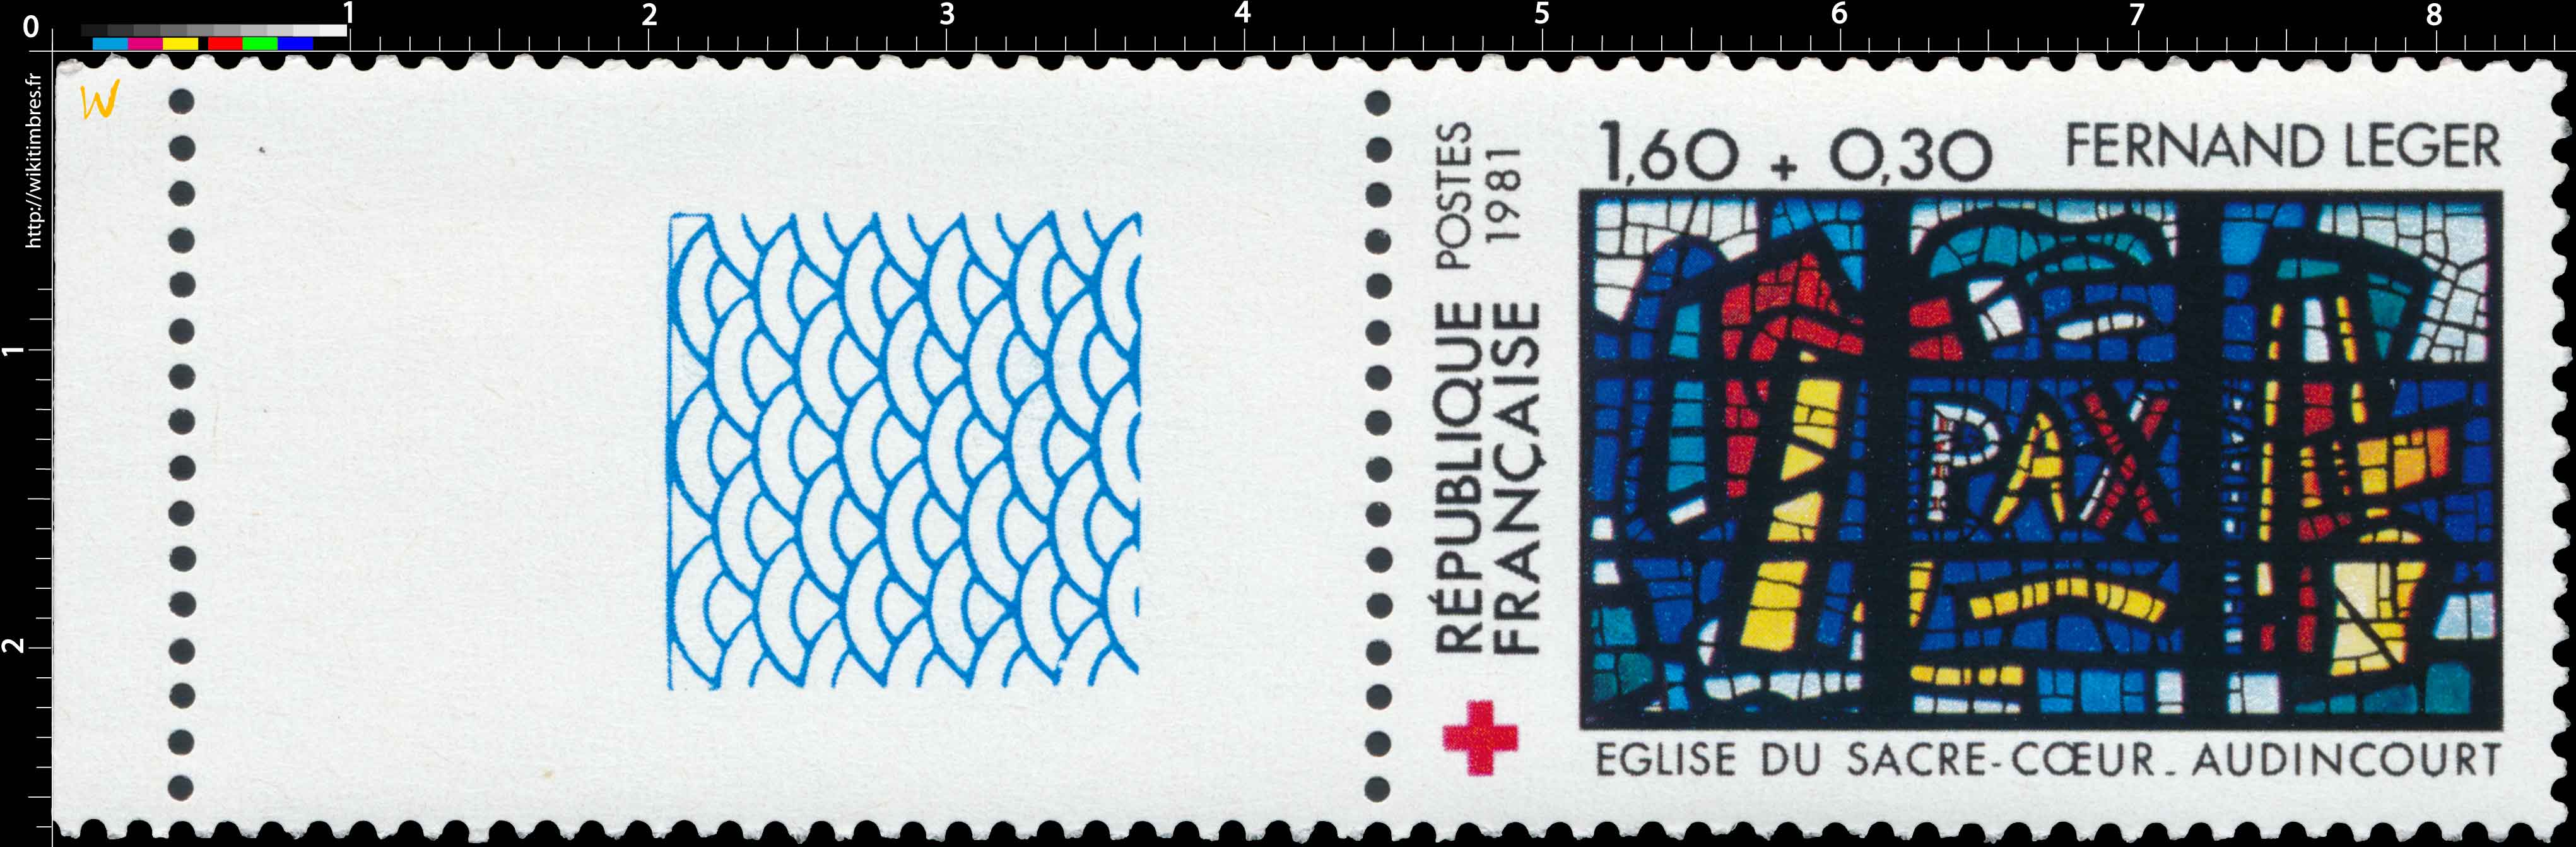 1981 FERNAND LEGER ÉGLISE DU SACRE-CŒUR-AUDINCOURT